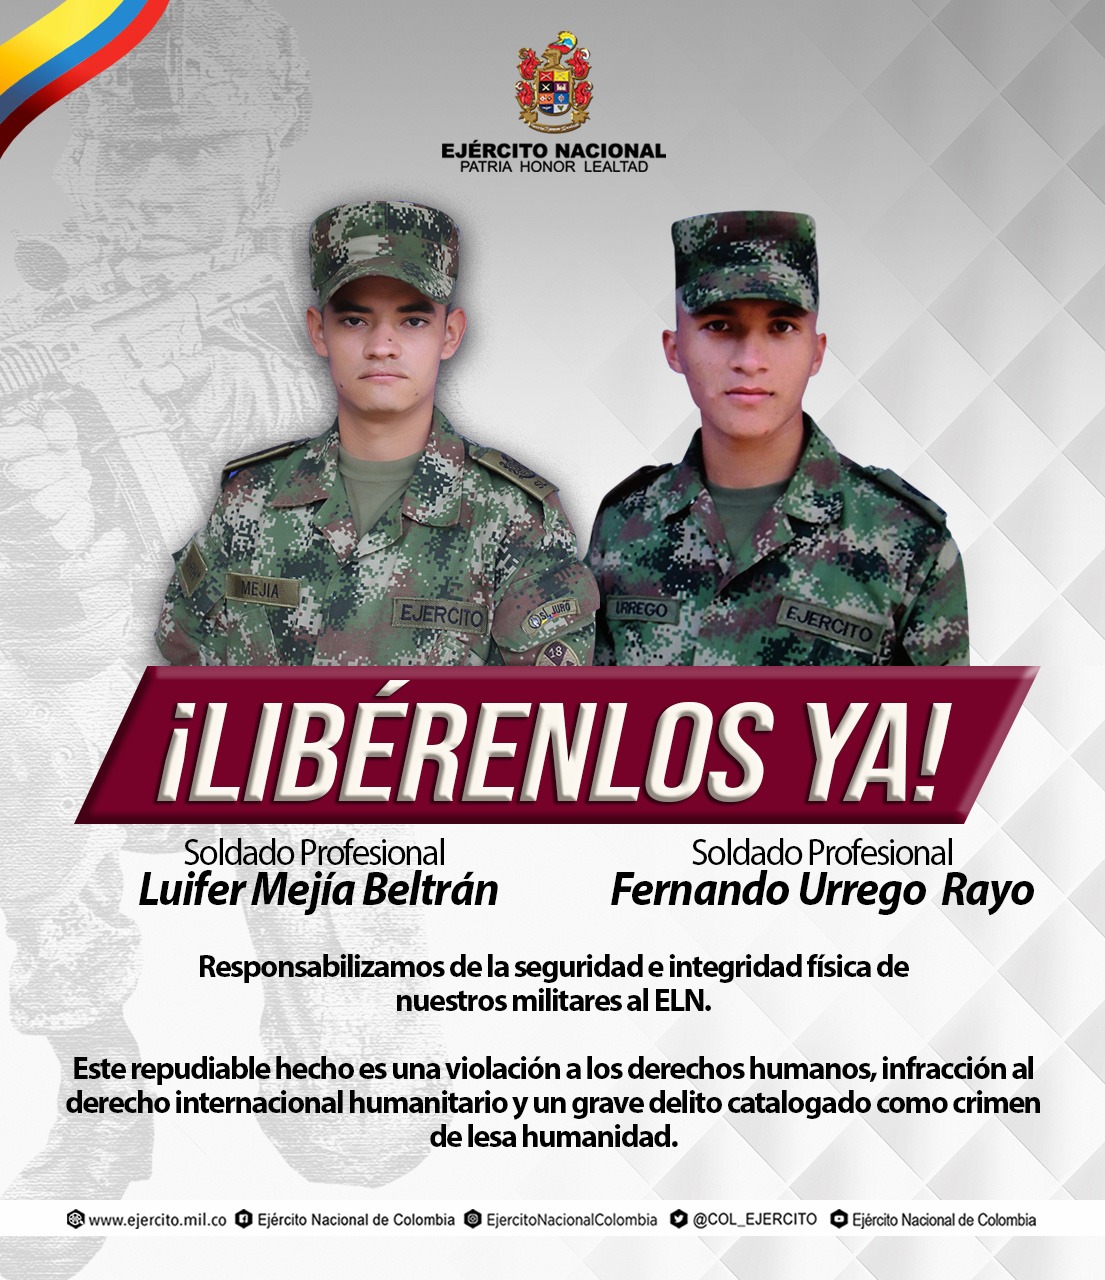 El Ejército solicita la liberación de dos soldados en Arauca.
FOTO: Ejército Nacional.